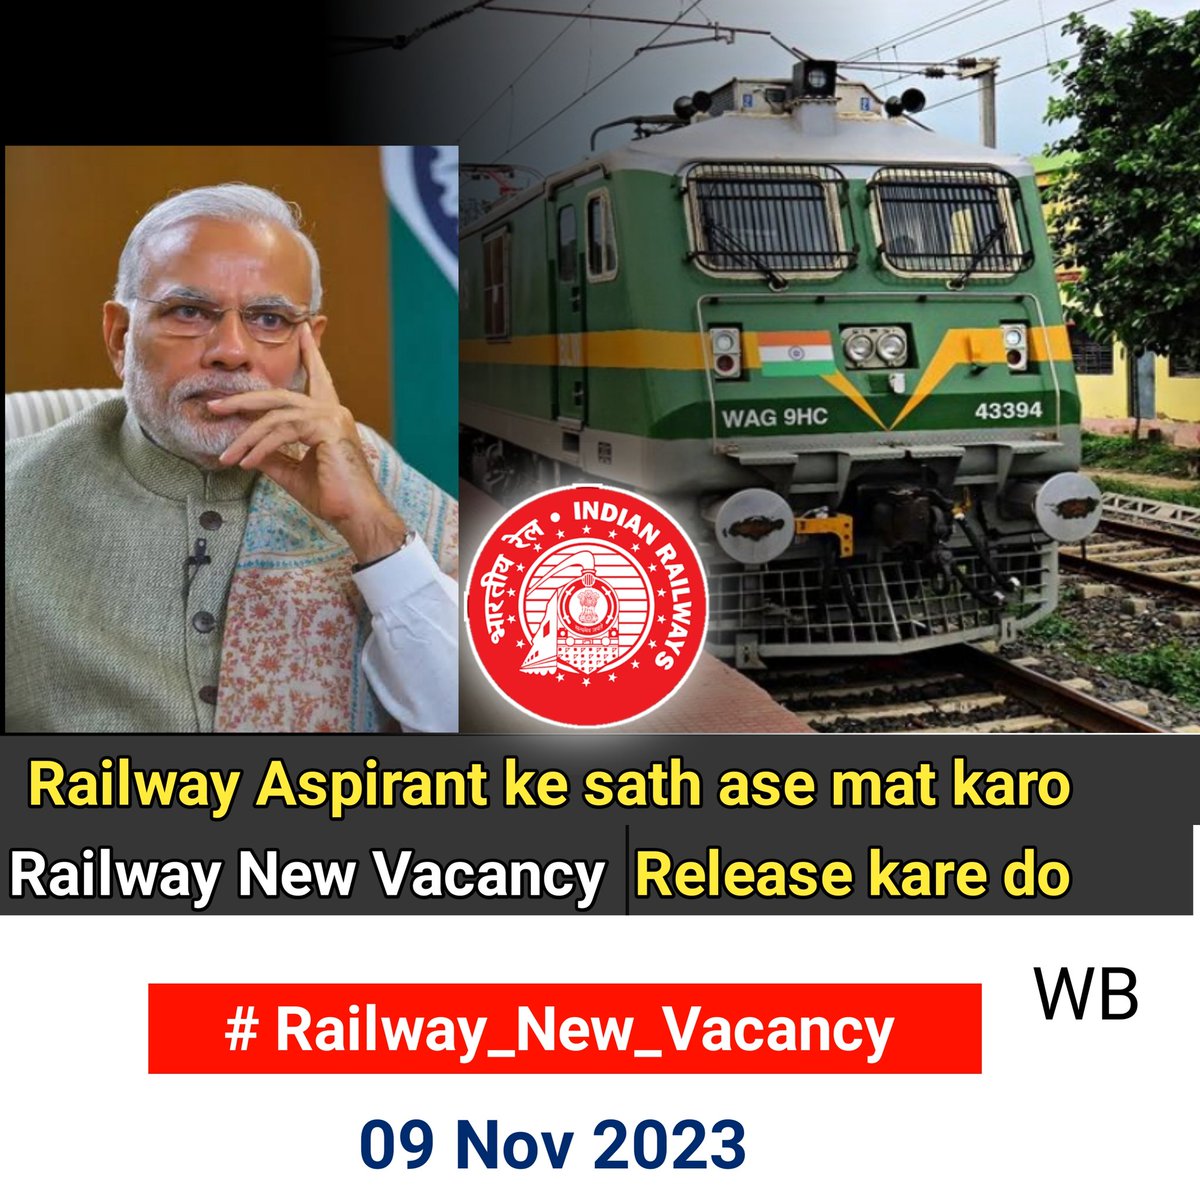 2018 के बाद 2024 आने को चला है रेलवे में ALP/TECH, JEE की भर्ती नहीं आयी है और 2019 से तो किसी भी प्रकार की भर्ती नहीं आयी है, युवाओं का भविष्य को ऐसे नजरअंदाज किया जा रहा है #Railway_New_Vacancy